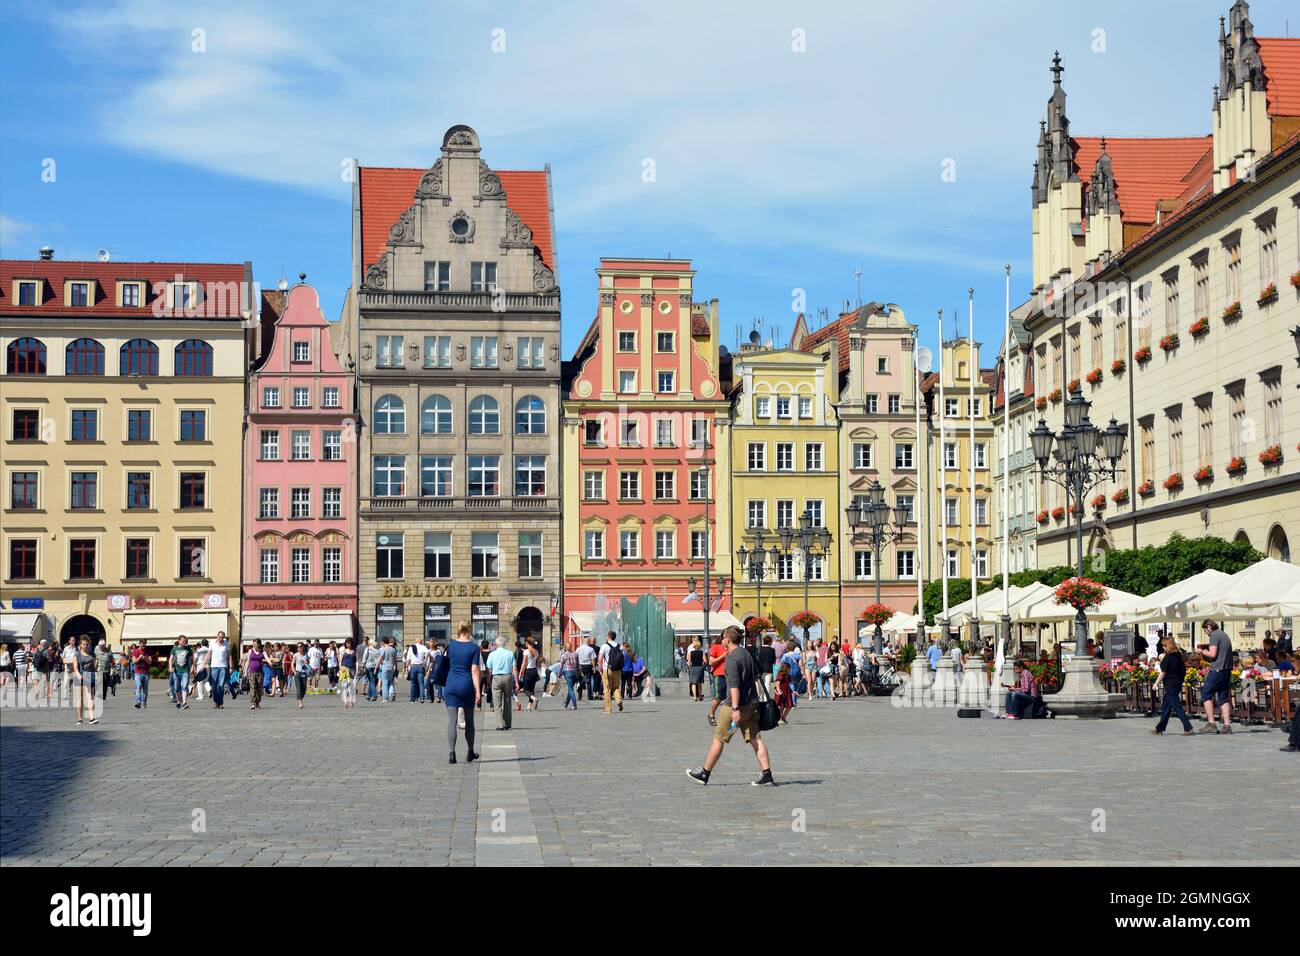 Wrocław, bassa Slesia, Polonia - 18 giugno 2016: Peoplewalking nella piazza del mercato nella storica città vecchia di Breslavia in Polonia. Foto Stock